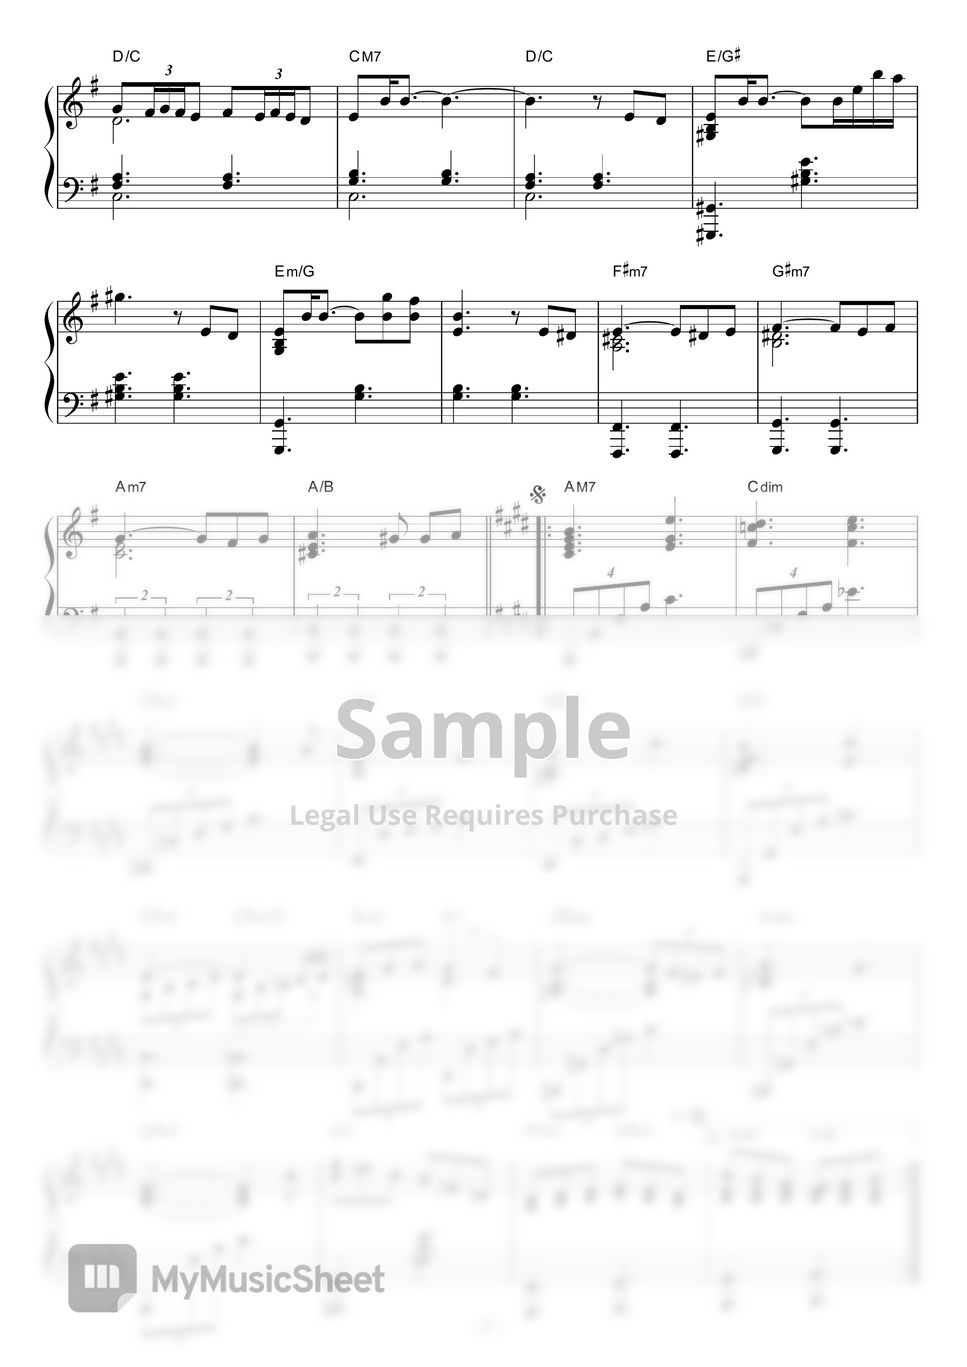 bohemianvoodoo - 石の教会 by piano*score